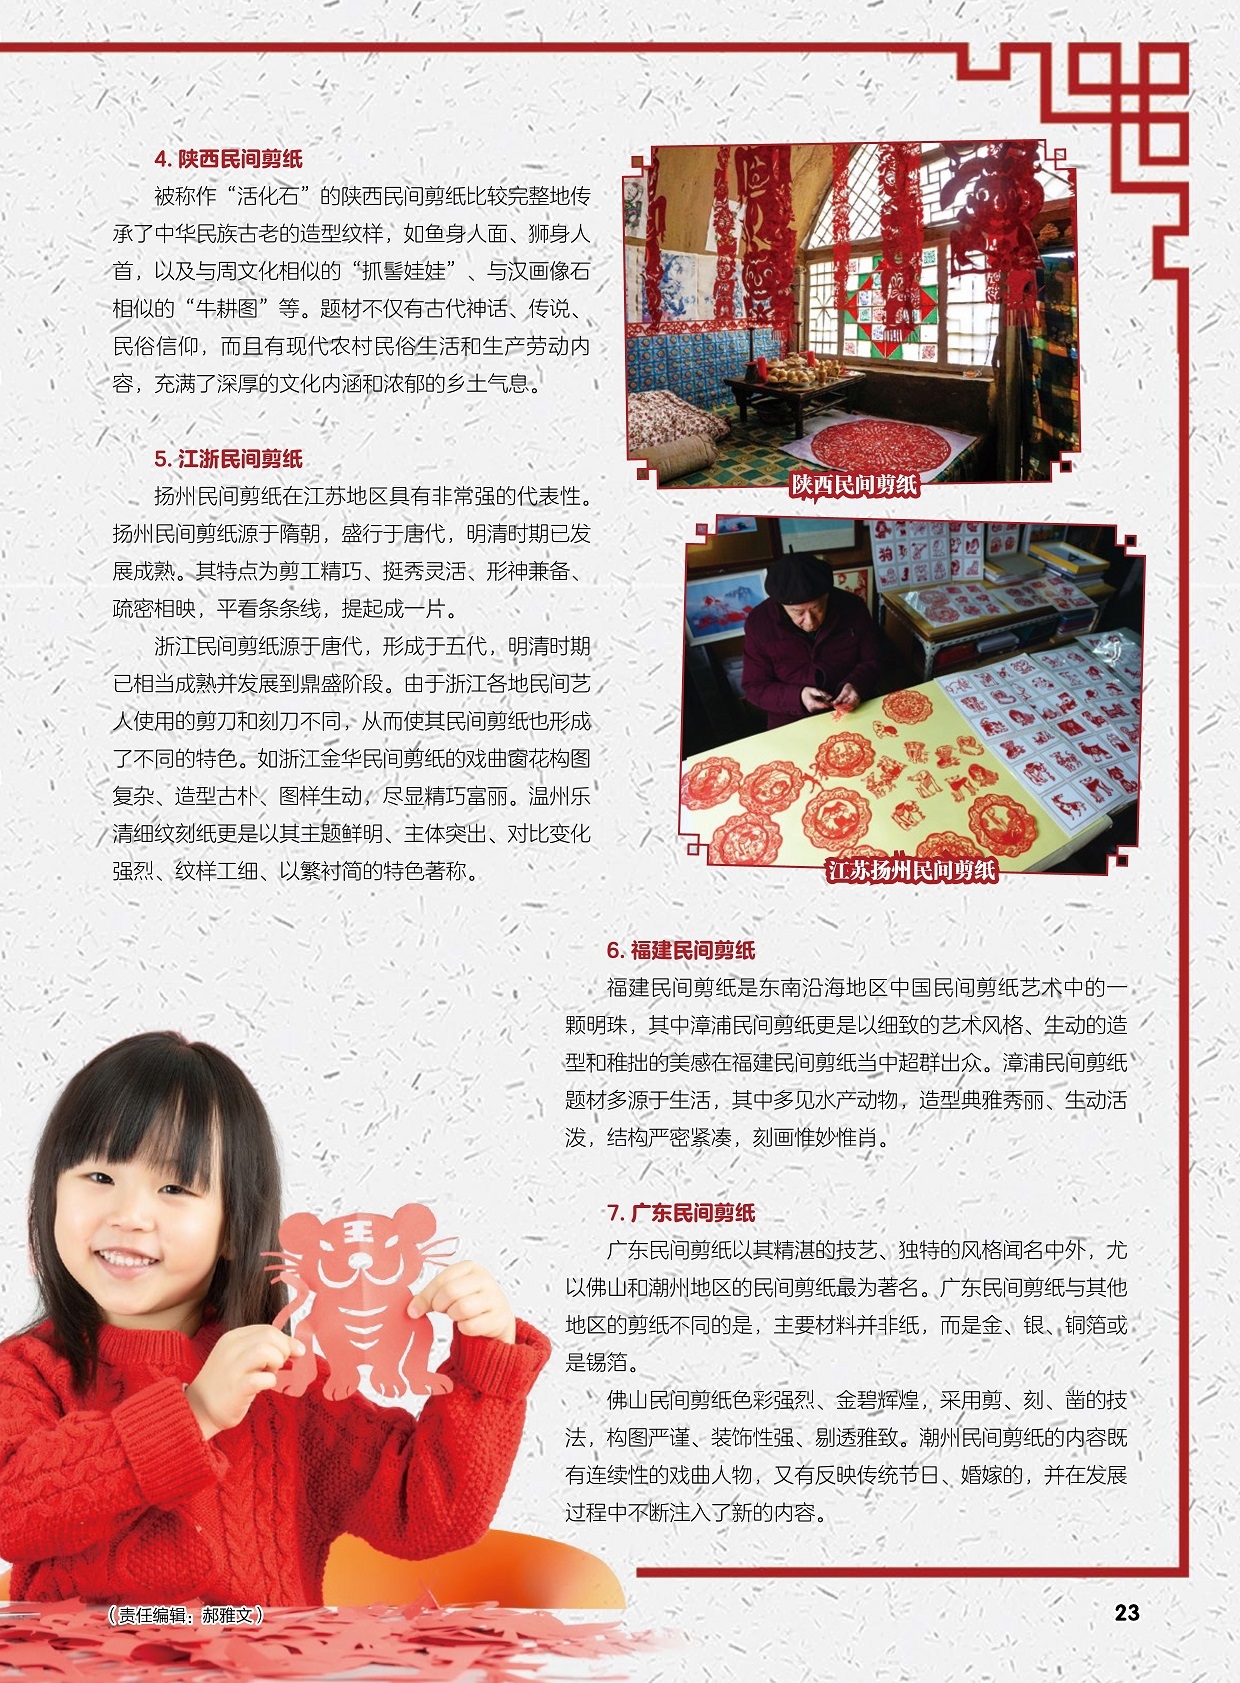 扬州民间剪纸在江苏地区具有非常强的代表性,漳浦民间剪纸题材多源于生活